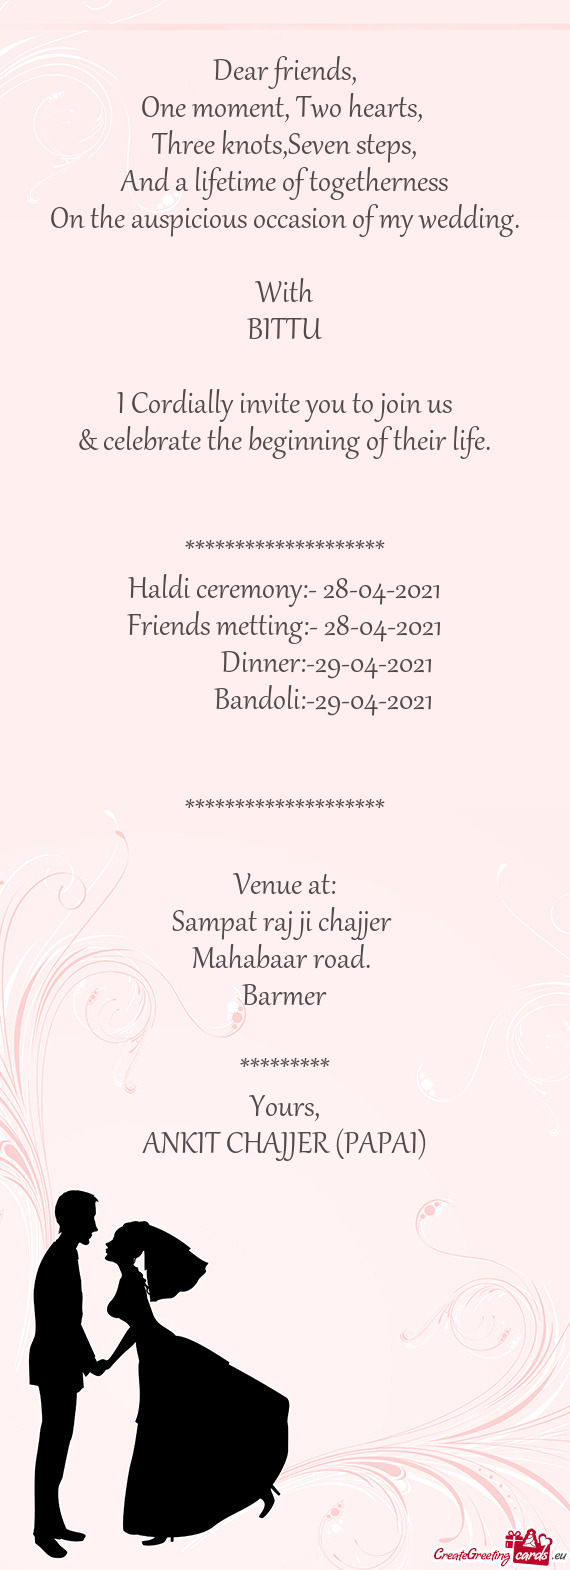 Haldi ceremony:- 28-04-2021